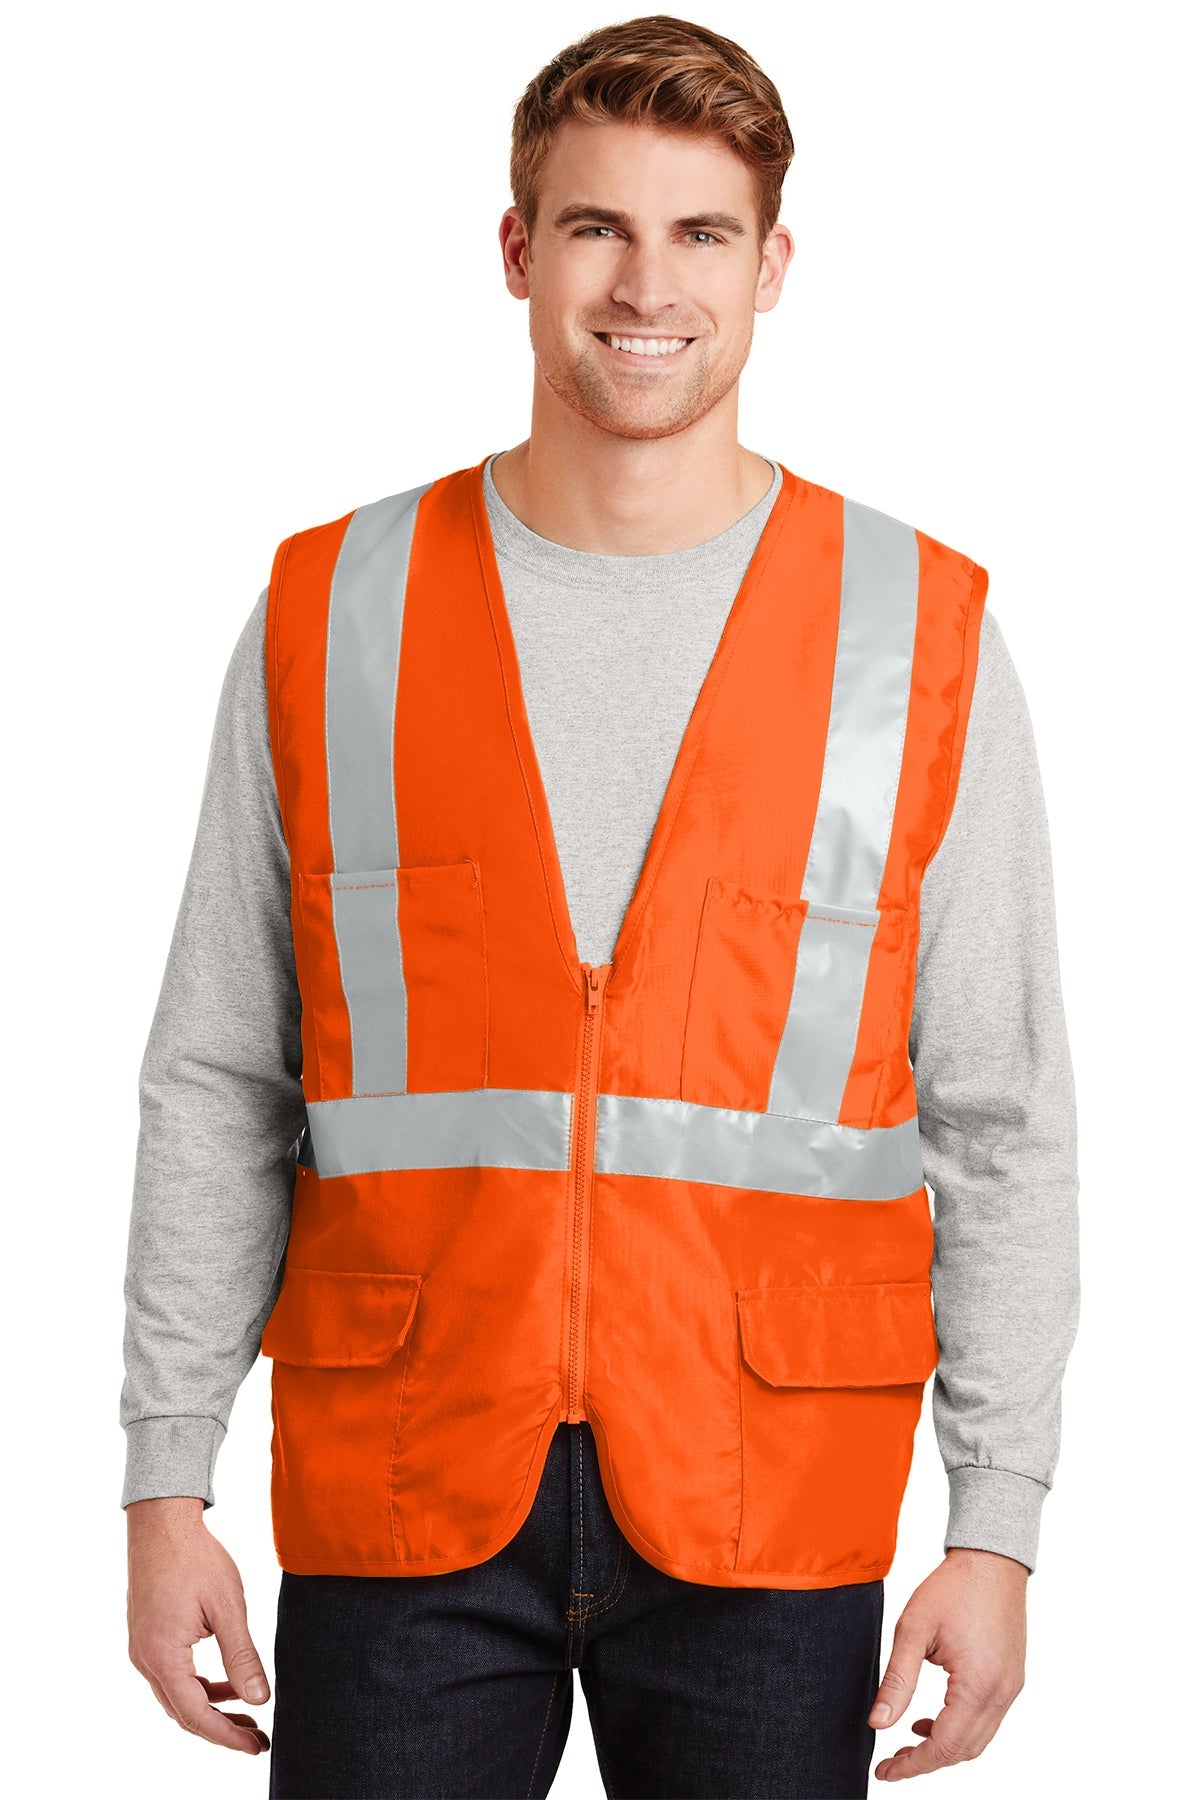 CornerStone Safety Orange CSV405 embroidered team jackets